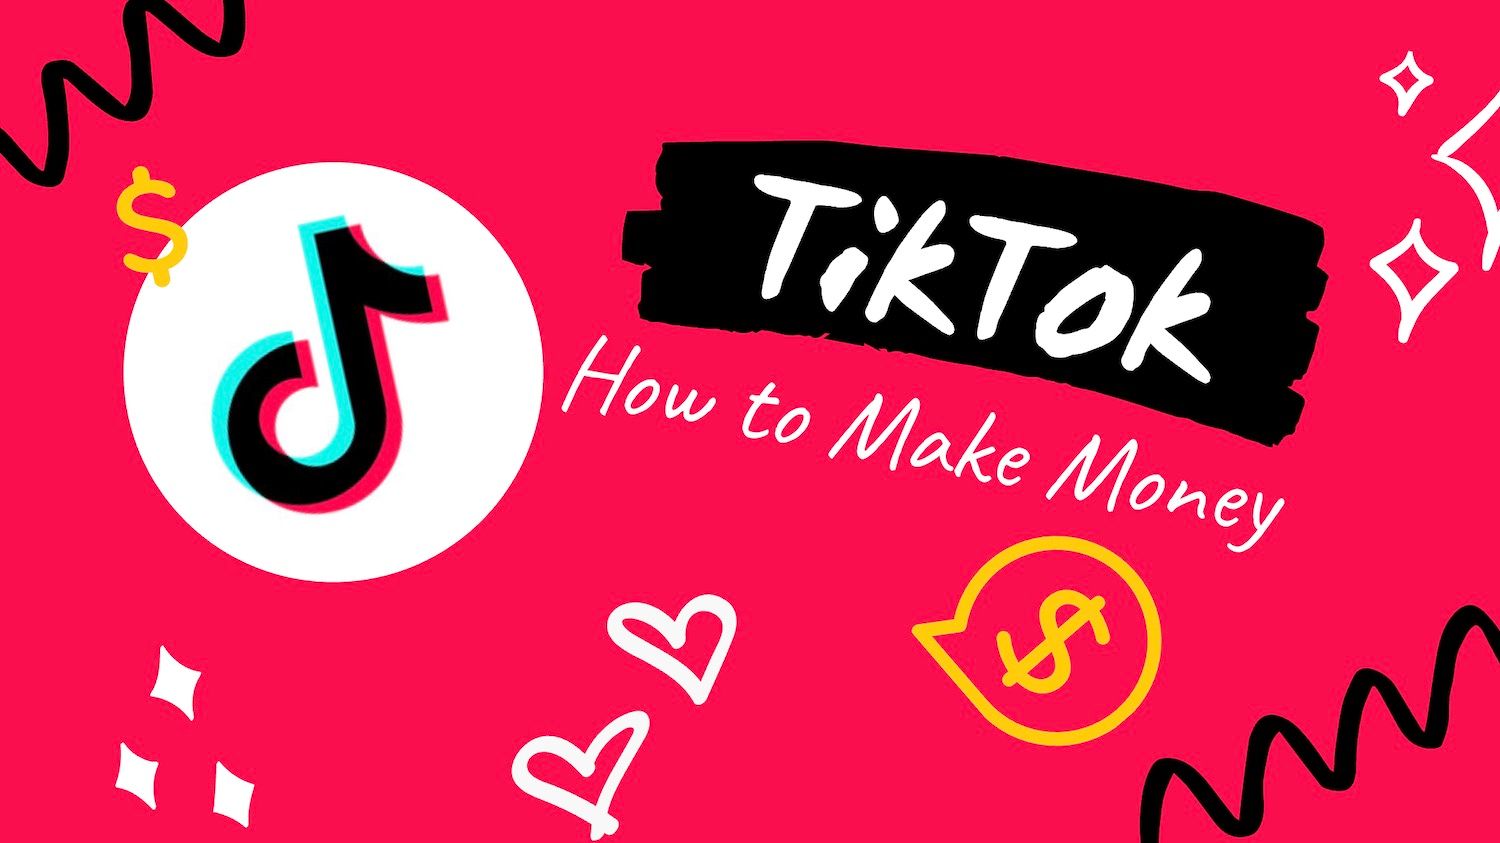 كيفية الحصول على فلوس من التيك توك مجاناً Tiktok